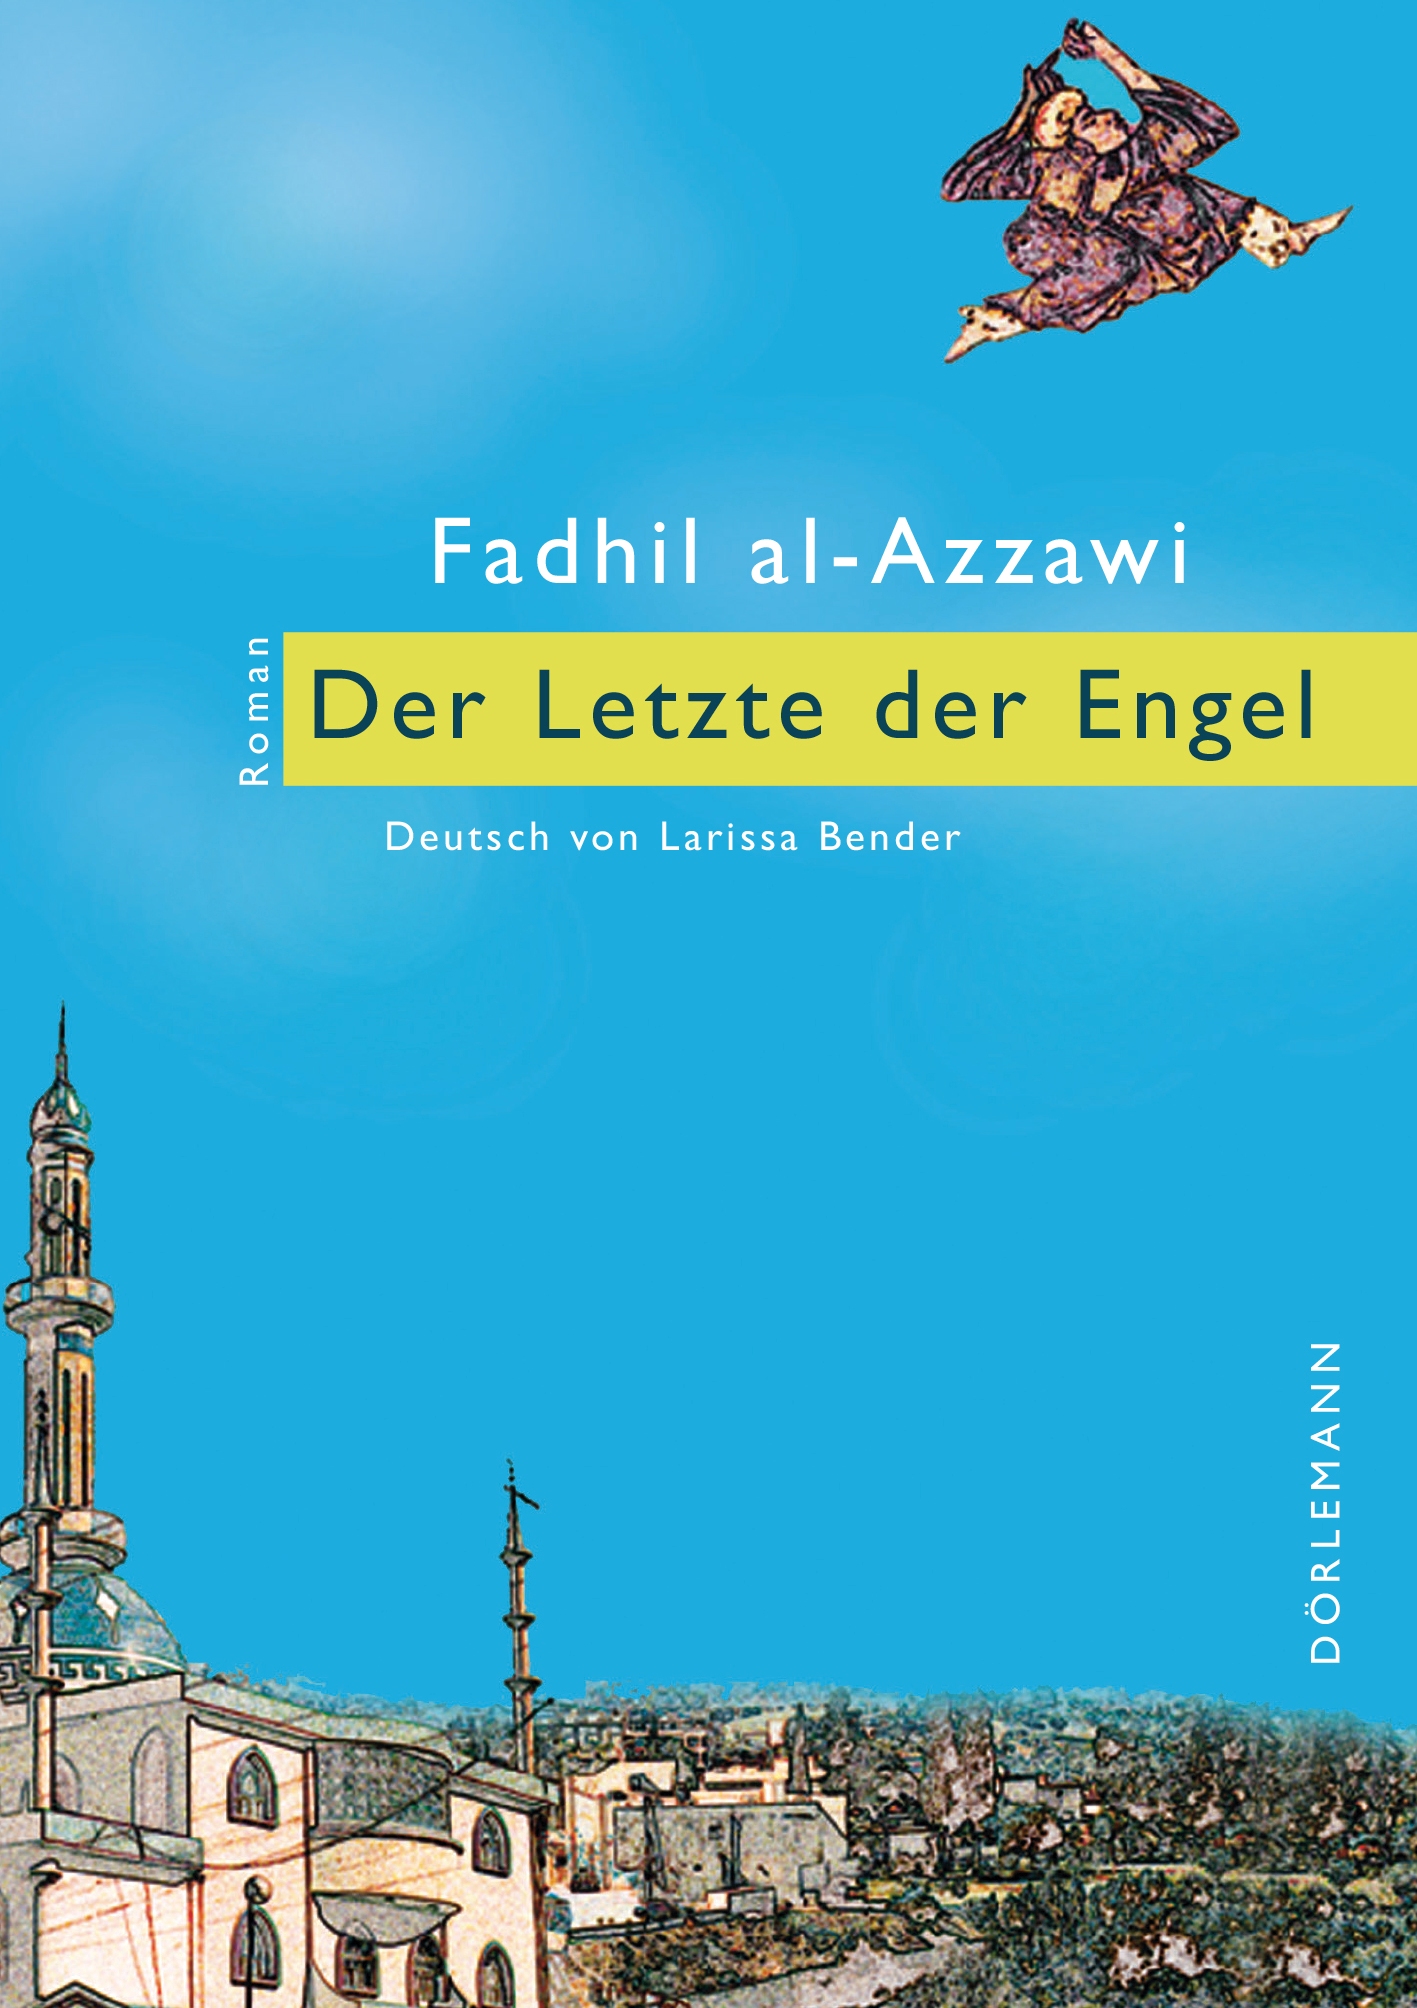 Buchcover Fadhil al-Azzawi: "Der Letzte der Engel" im Dörlemann Verlag